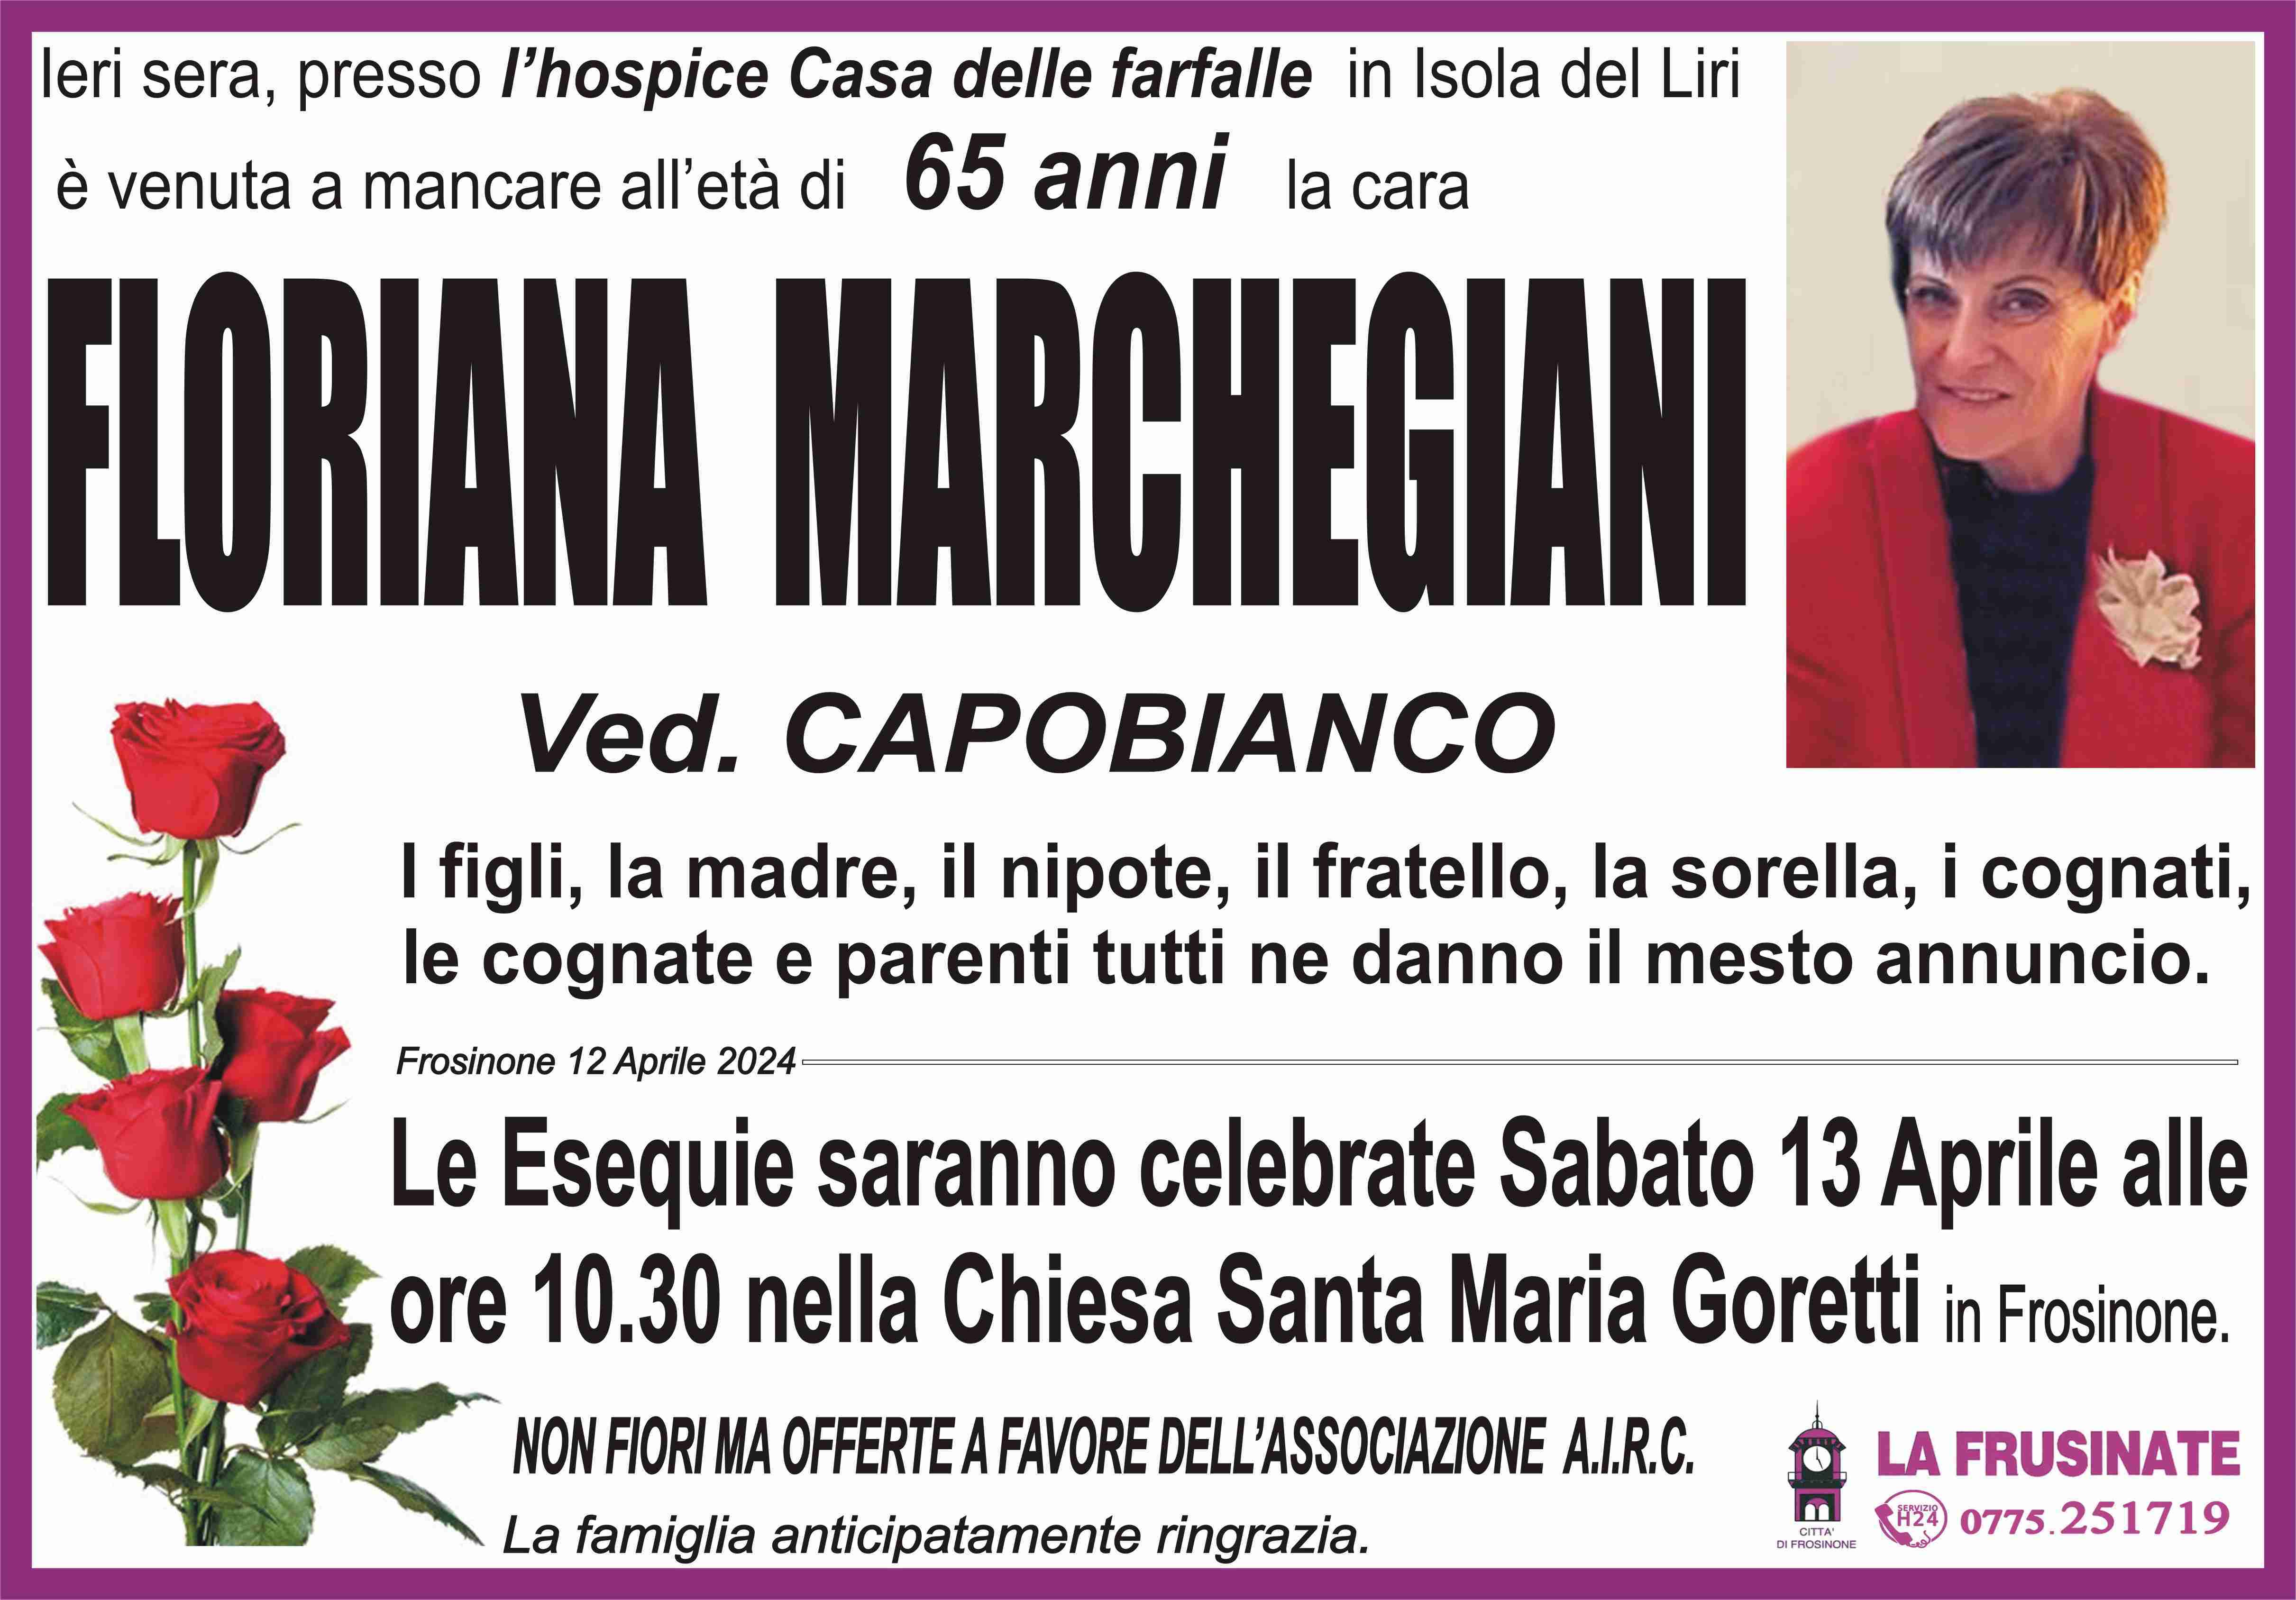 Floriana Marchegiani